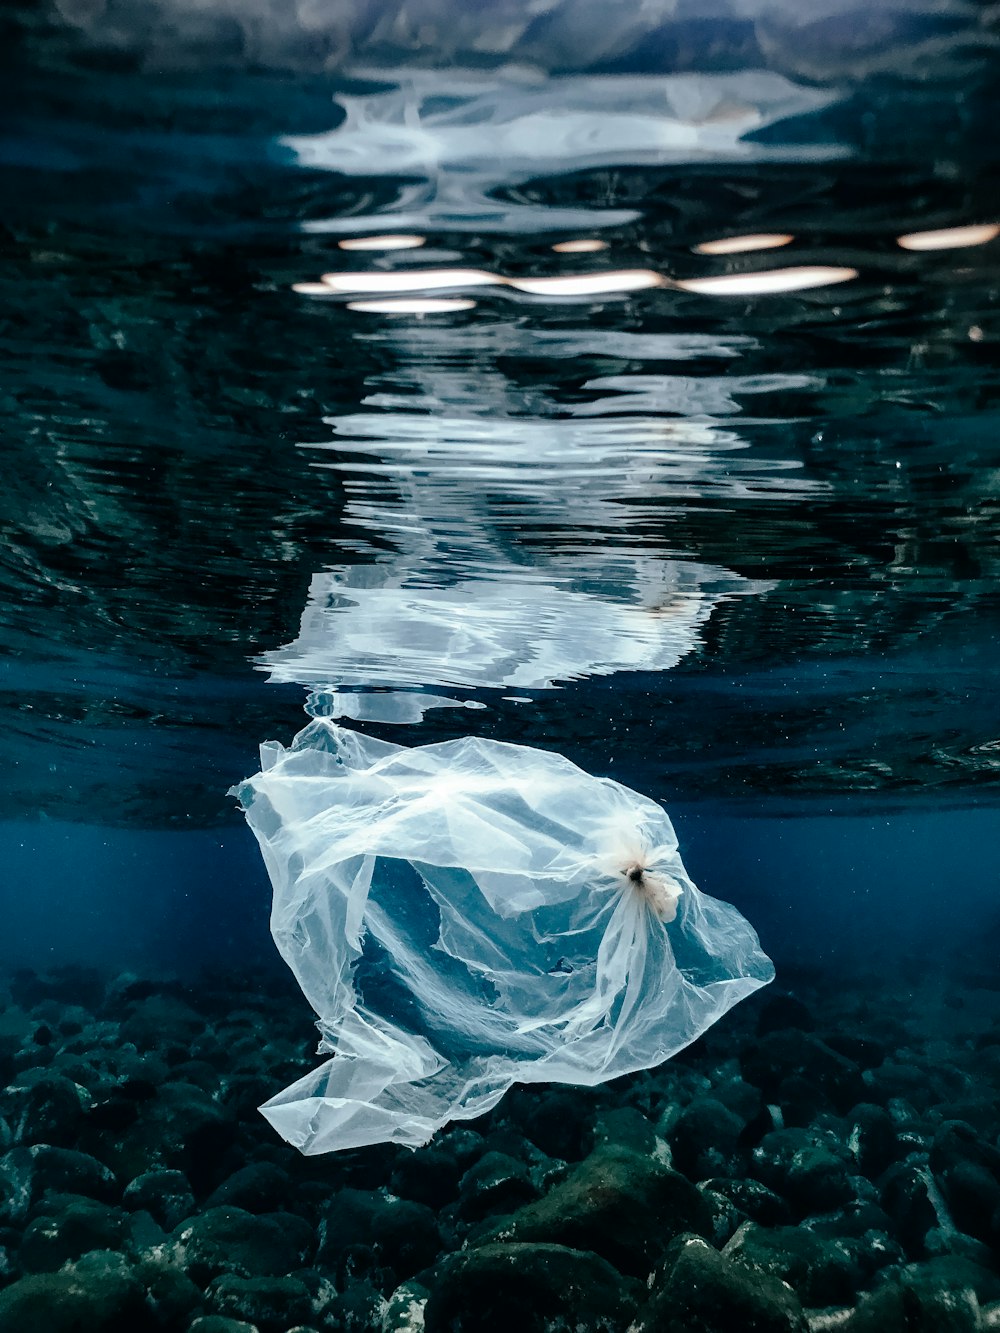 Un sacchetto di plastica che galleggia sopra uno specchio d'acqua